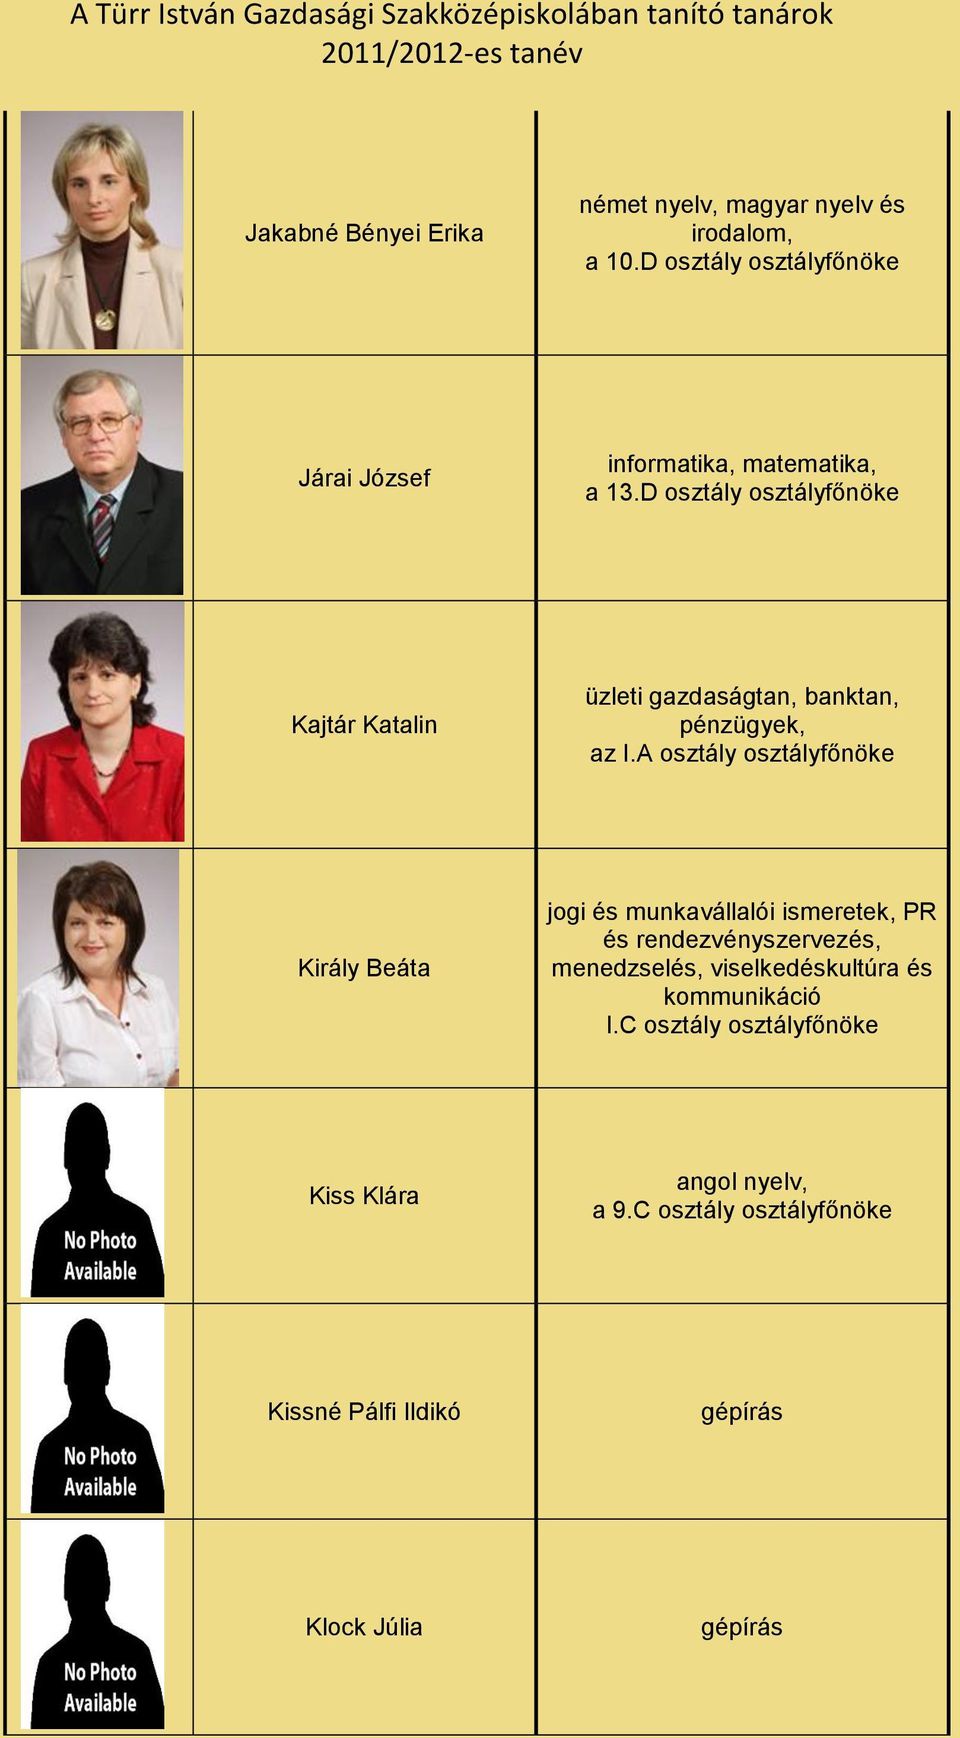 D osztály osztályfőnöke Kajtár Katalin üzleti gazdaságtan, banktan, pénzügyek, az I.